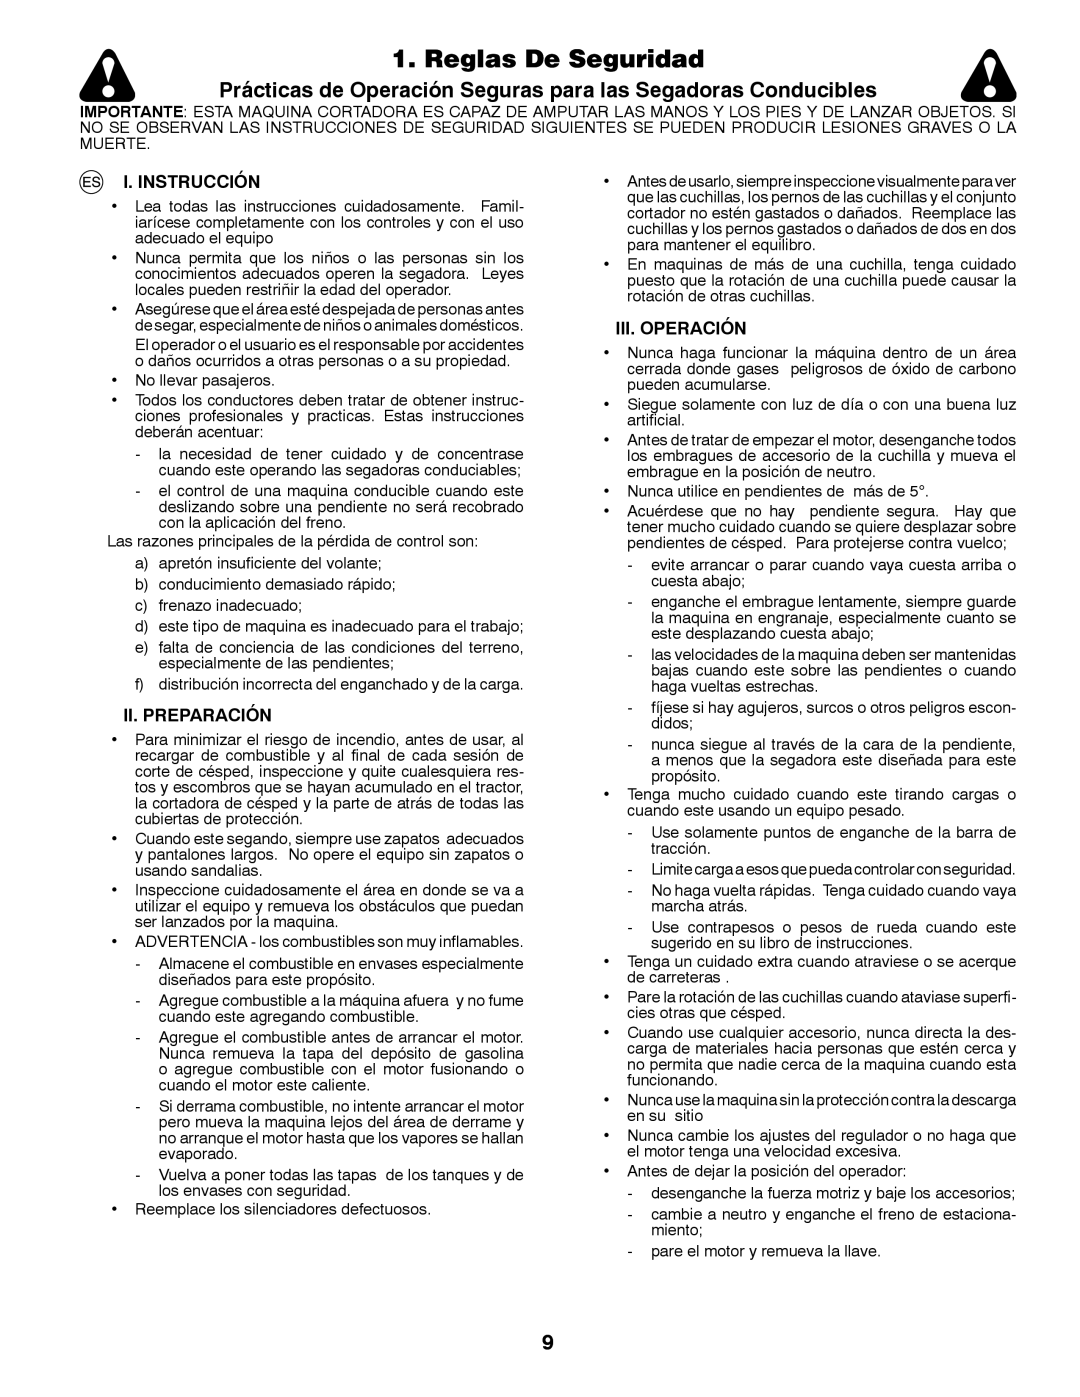 Jonsered LT2213C instruction manual Reglas De Seguridad, I. Instrucción, Ii. Preparación, Iii.Operación 